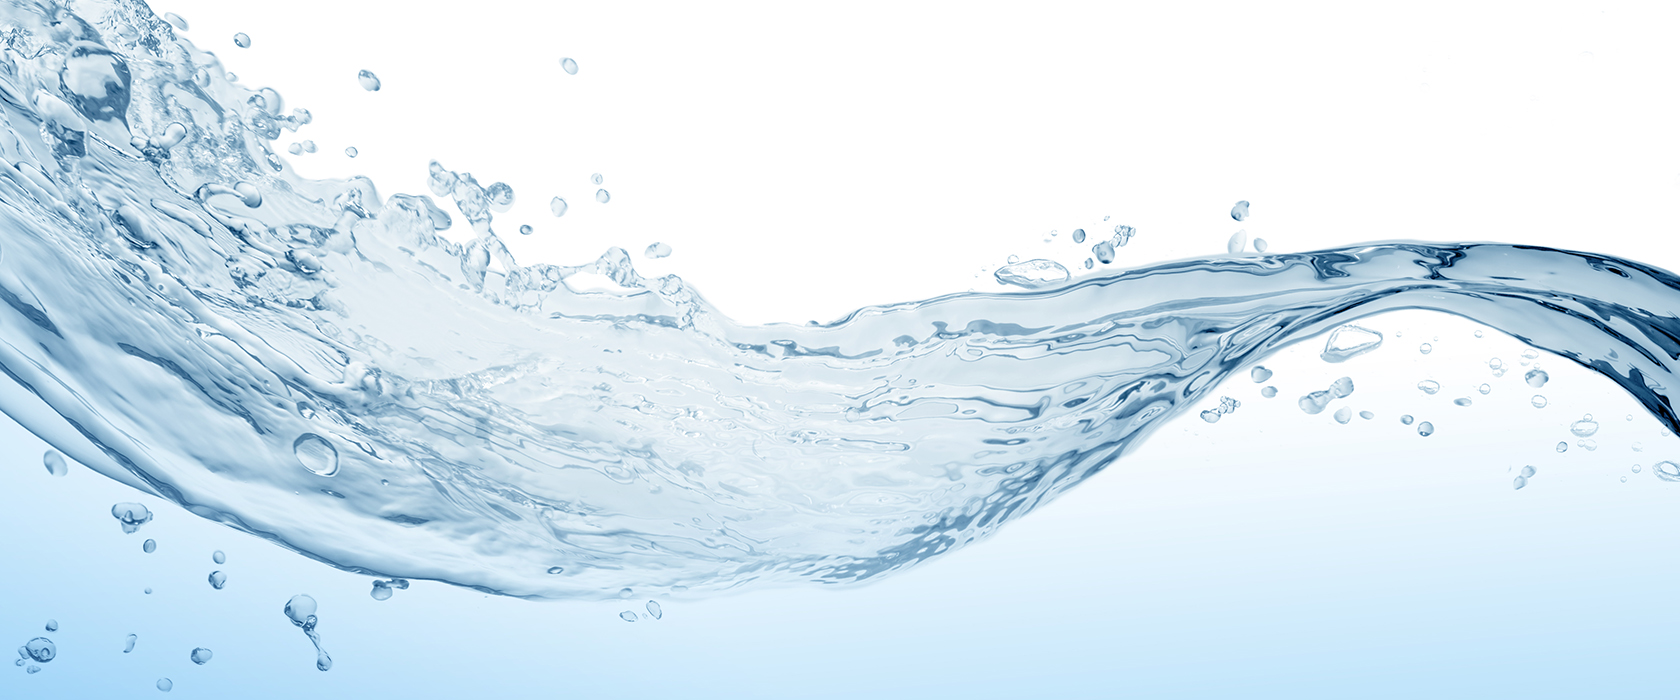 Дистиллированная вода. Можно ли пить дистиллированную воду?